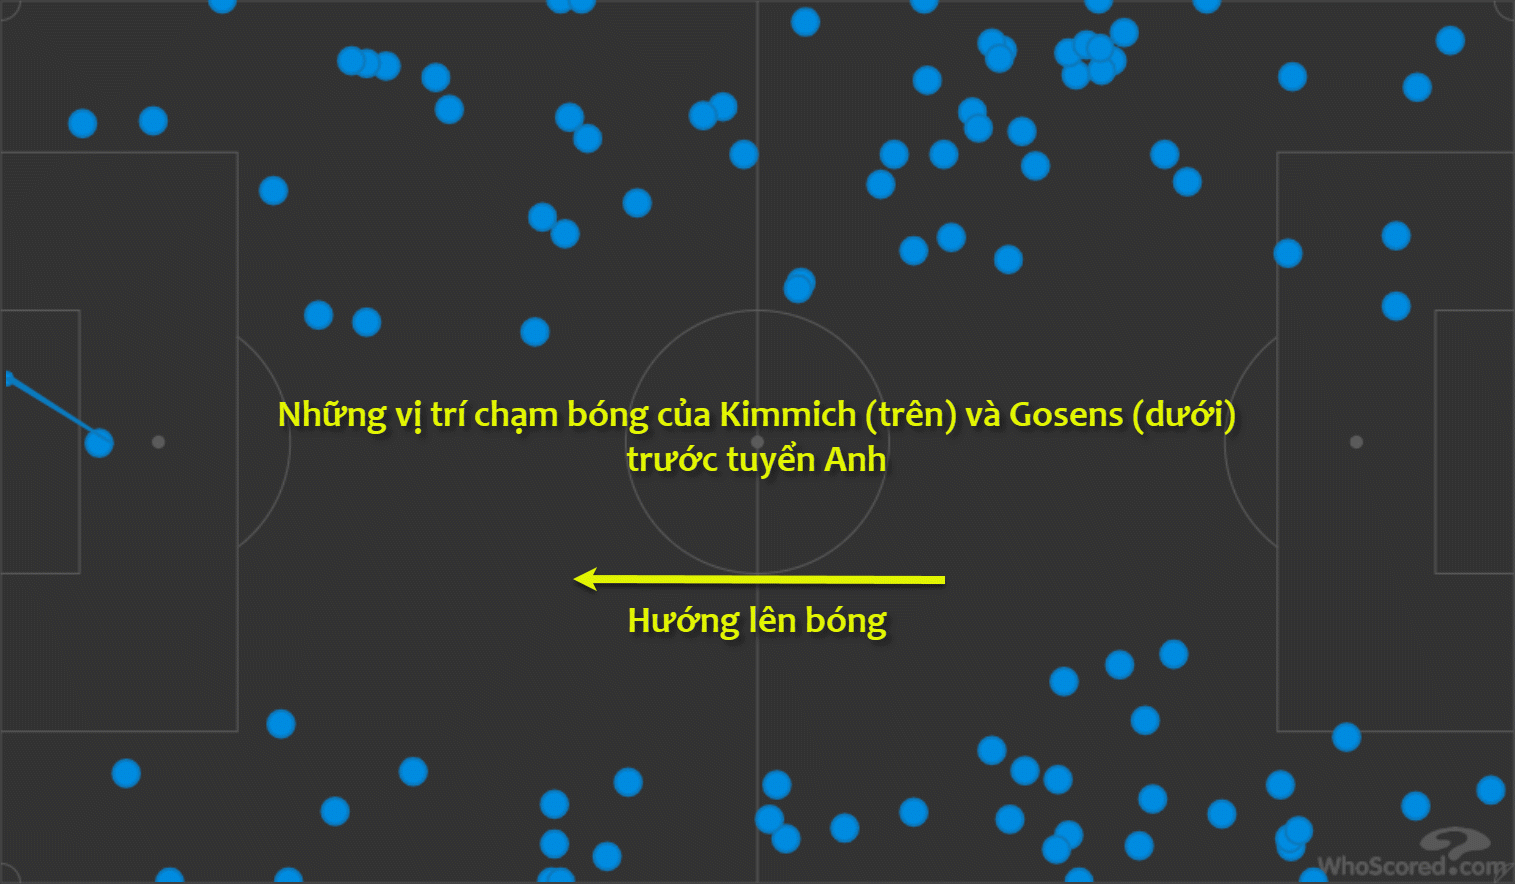 Trước Bồ Đào Nha, tần suất chạm bóng của Gosens và Kimmich chủ yếu là trên phần sân đối thủ